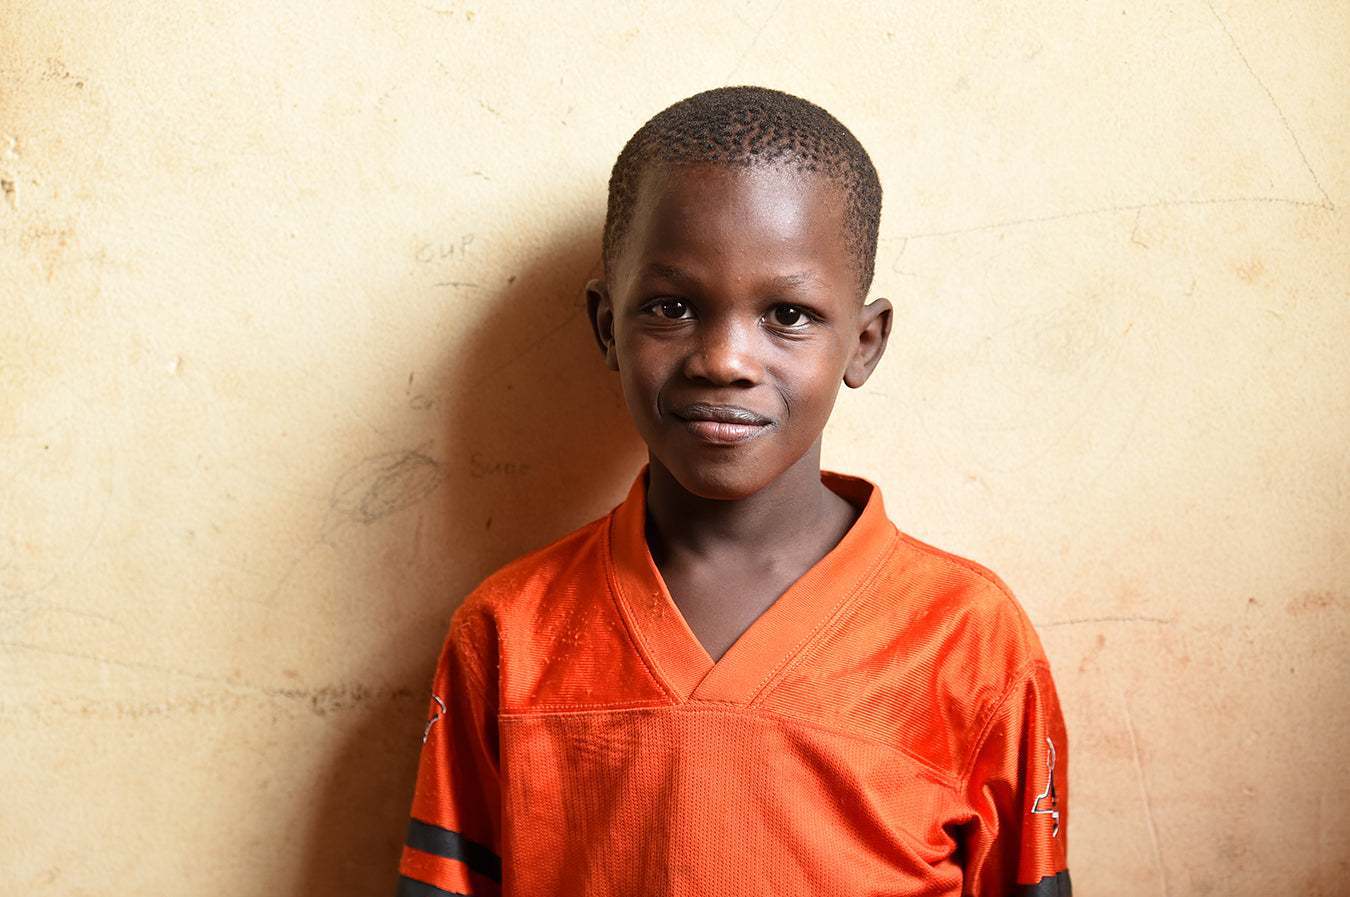 Smiling Ugandan boy in orange football jersey